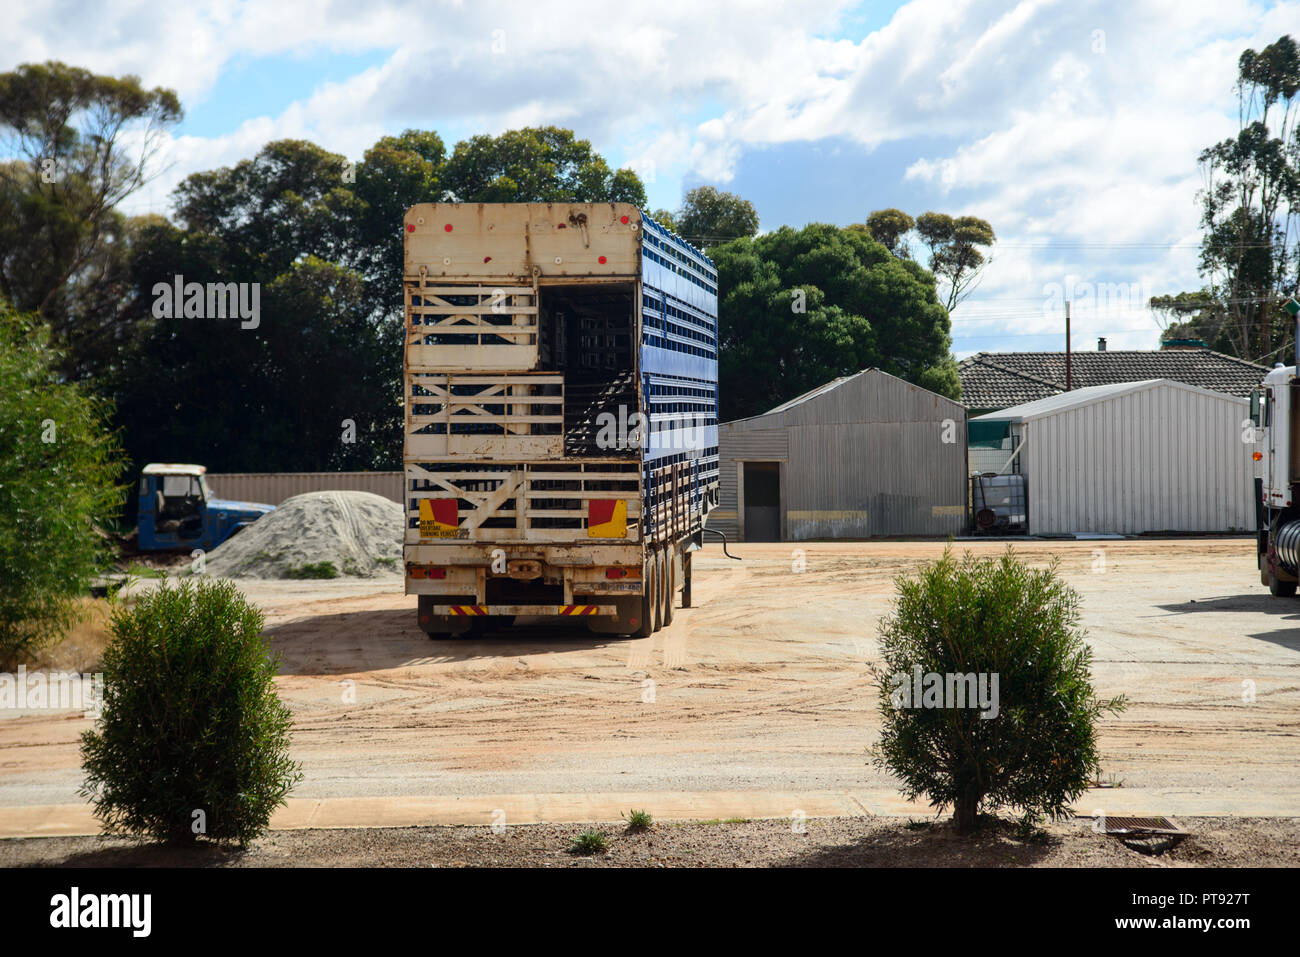 a Road Train parking on a dusty yard, Eastern Wheatbelt region, Lake Grace, Western Australia, Australia Stock Photo